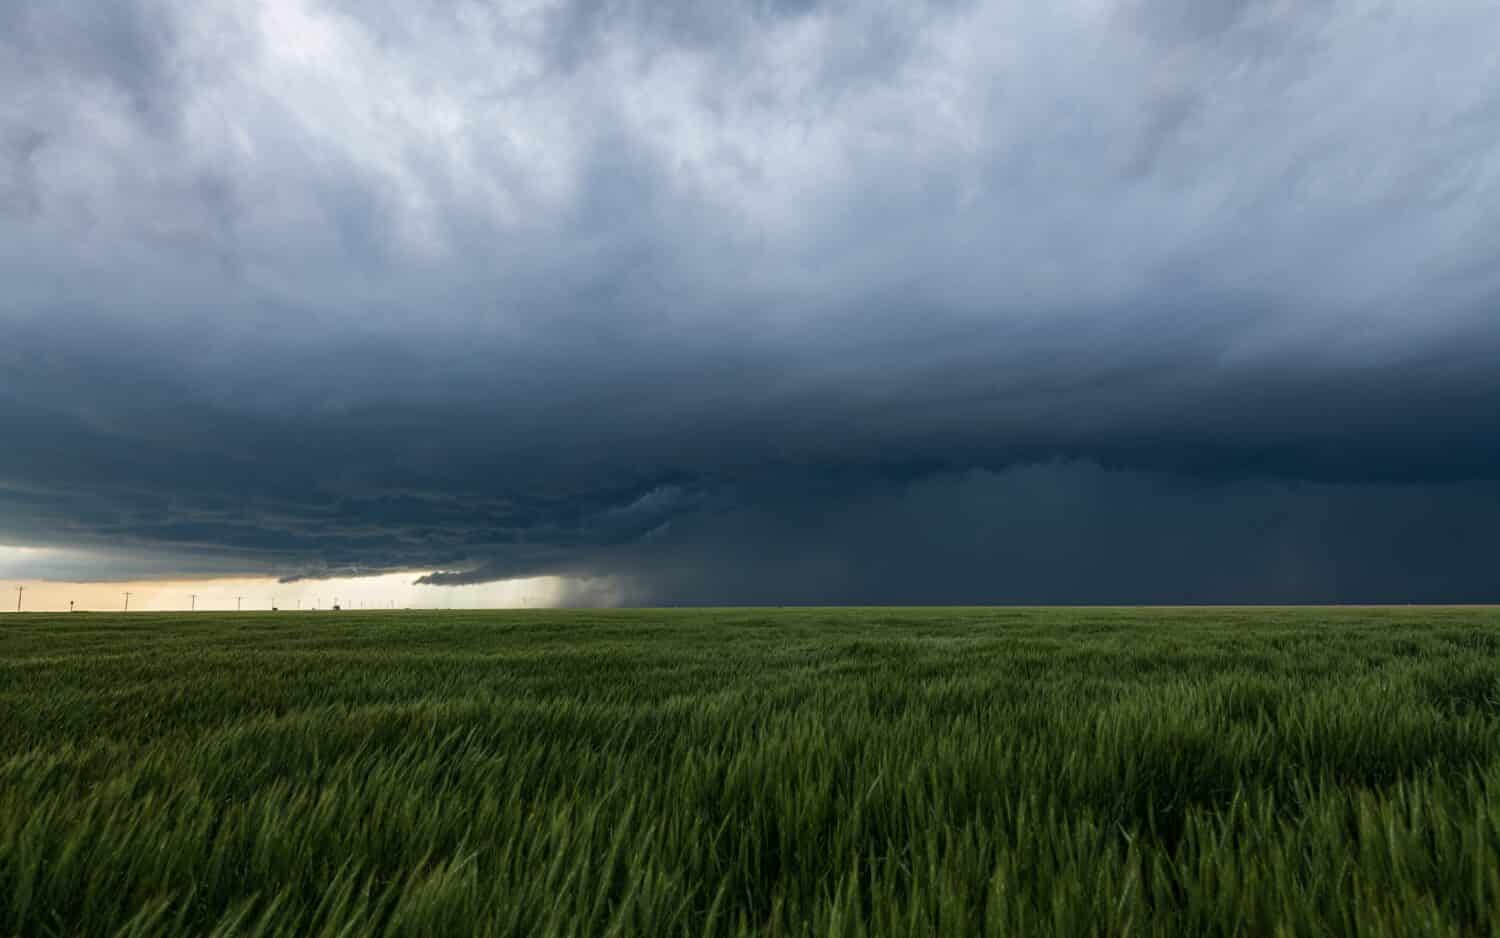 Monster supercell barrels across the plains of Kansas dropping massive hail